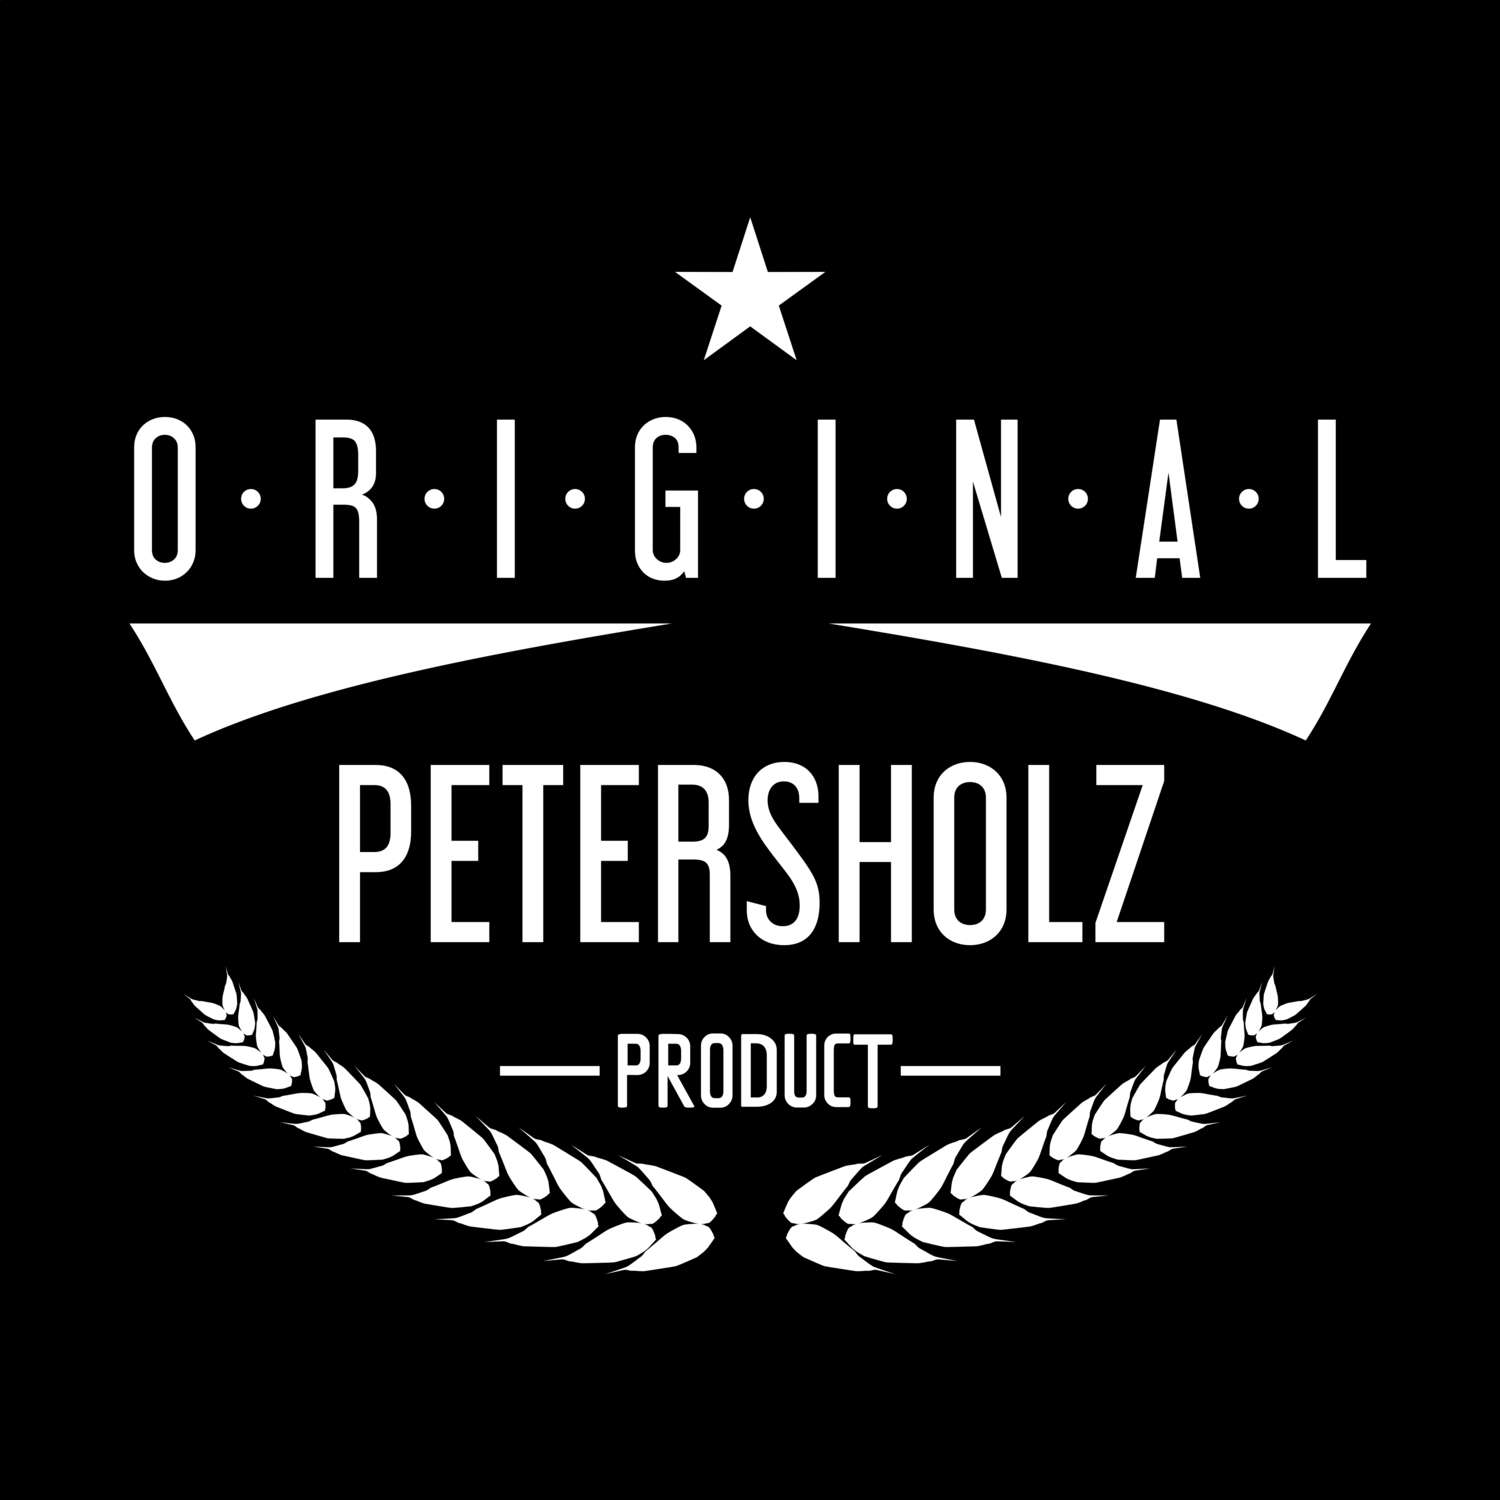 Petersholz T-Shirt »Original Product«